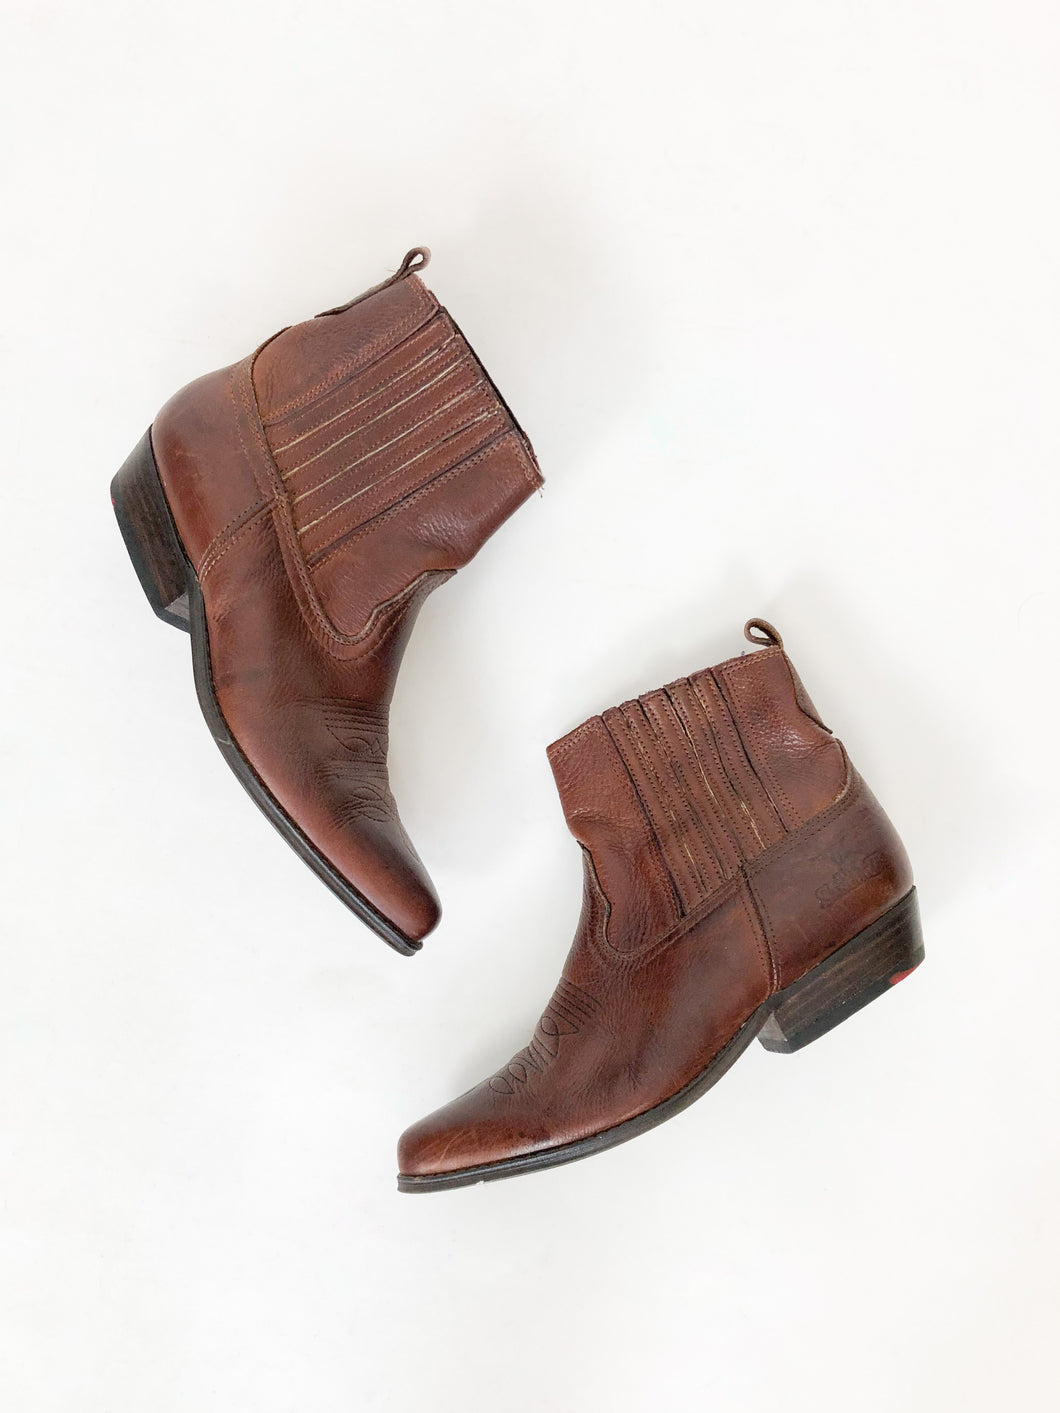 Vintage 80s Joe Sanchez Brown Leather Ankle Boots Size 40